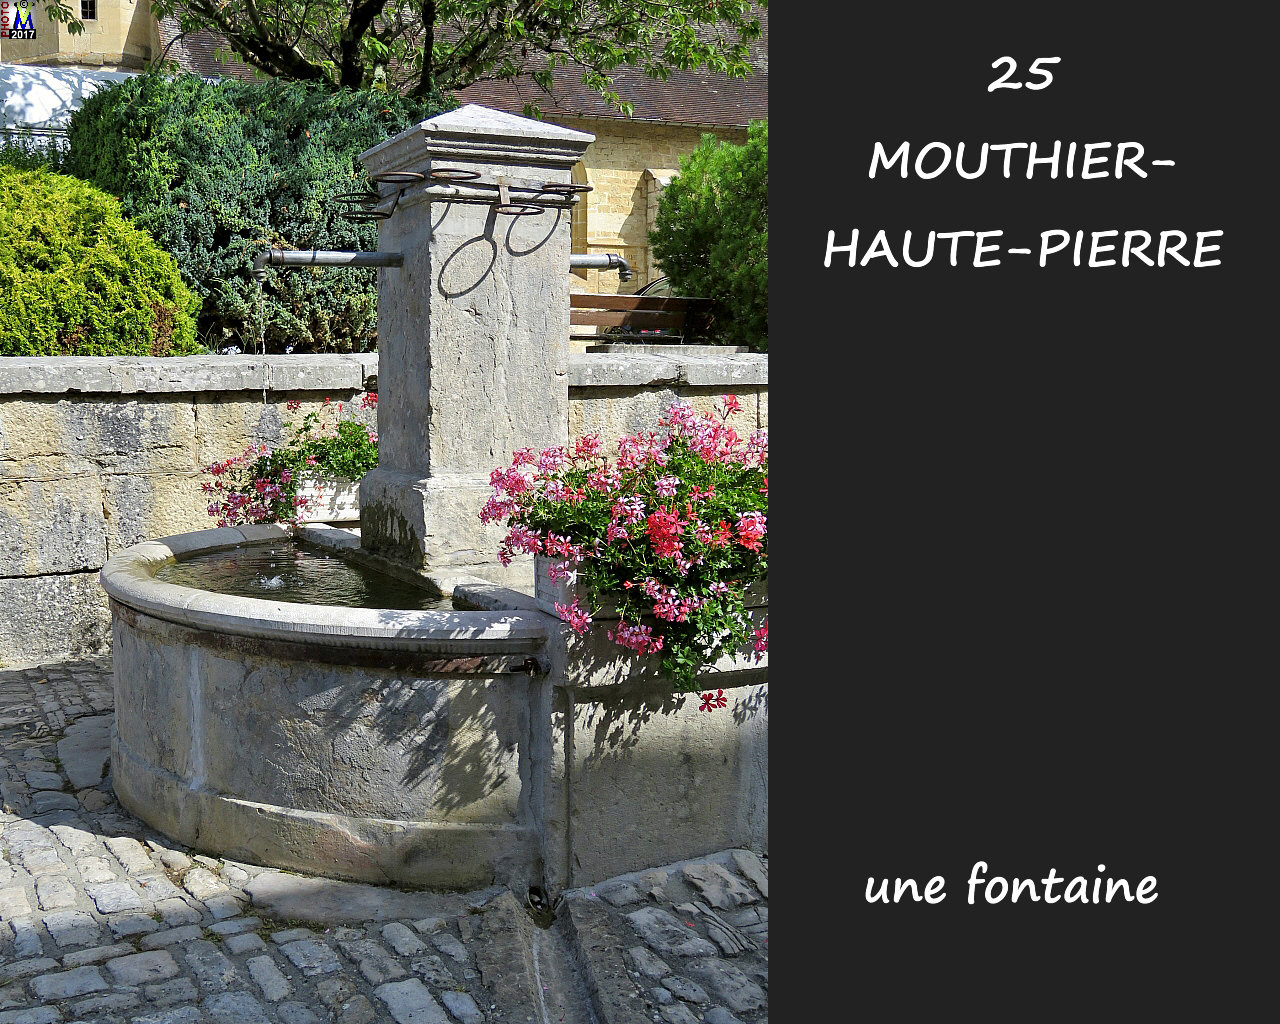 25MOUTHIER-HAUTE-PIERRE_fontaine_110.JPG